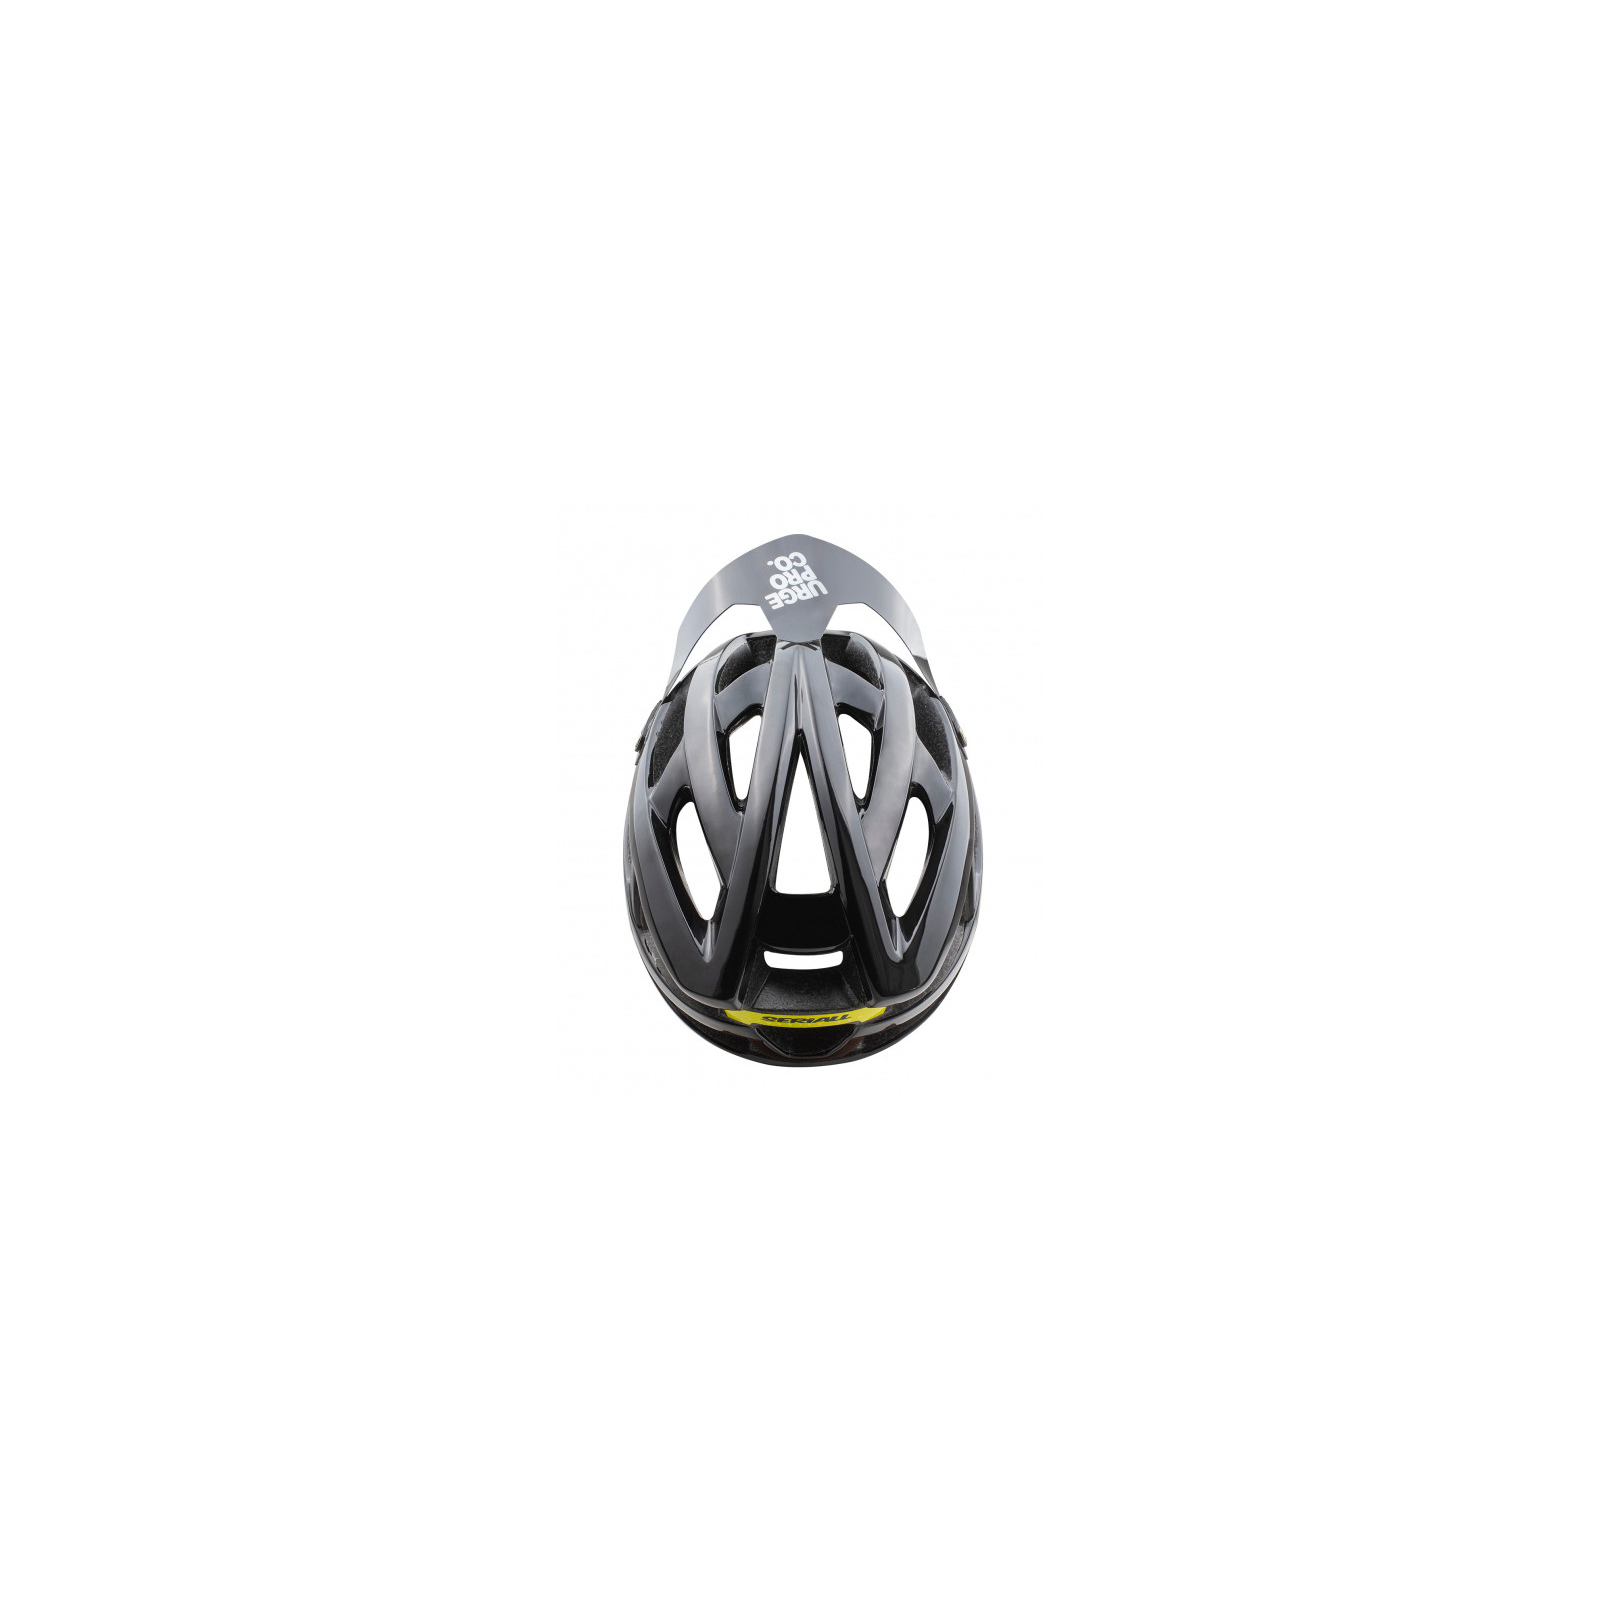 Шлем Urge SeriAll Оливковий L/XL 58-60 см (UBP22842L) изображение 3